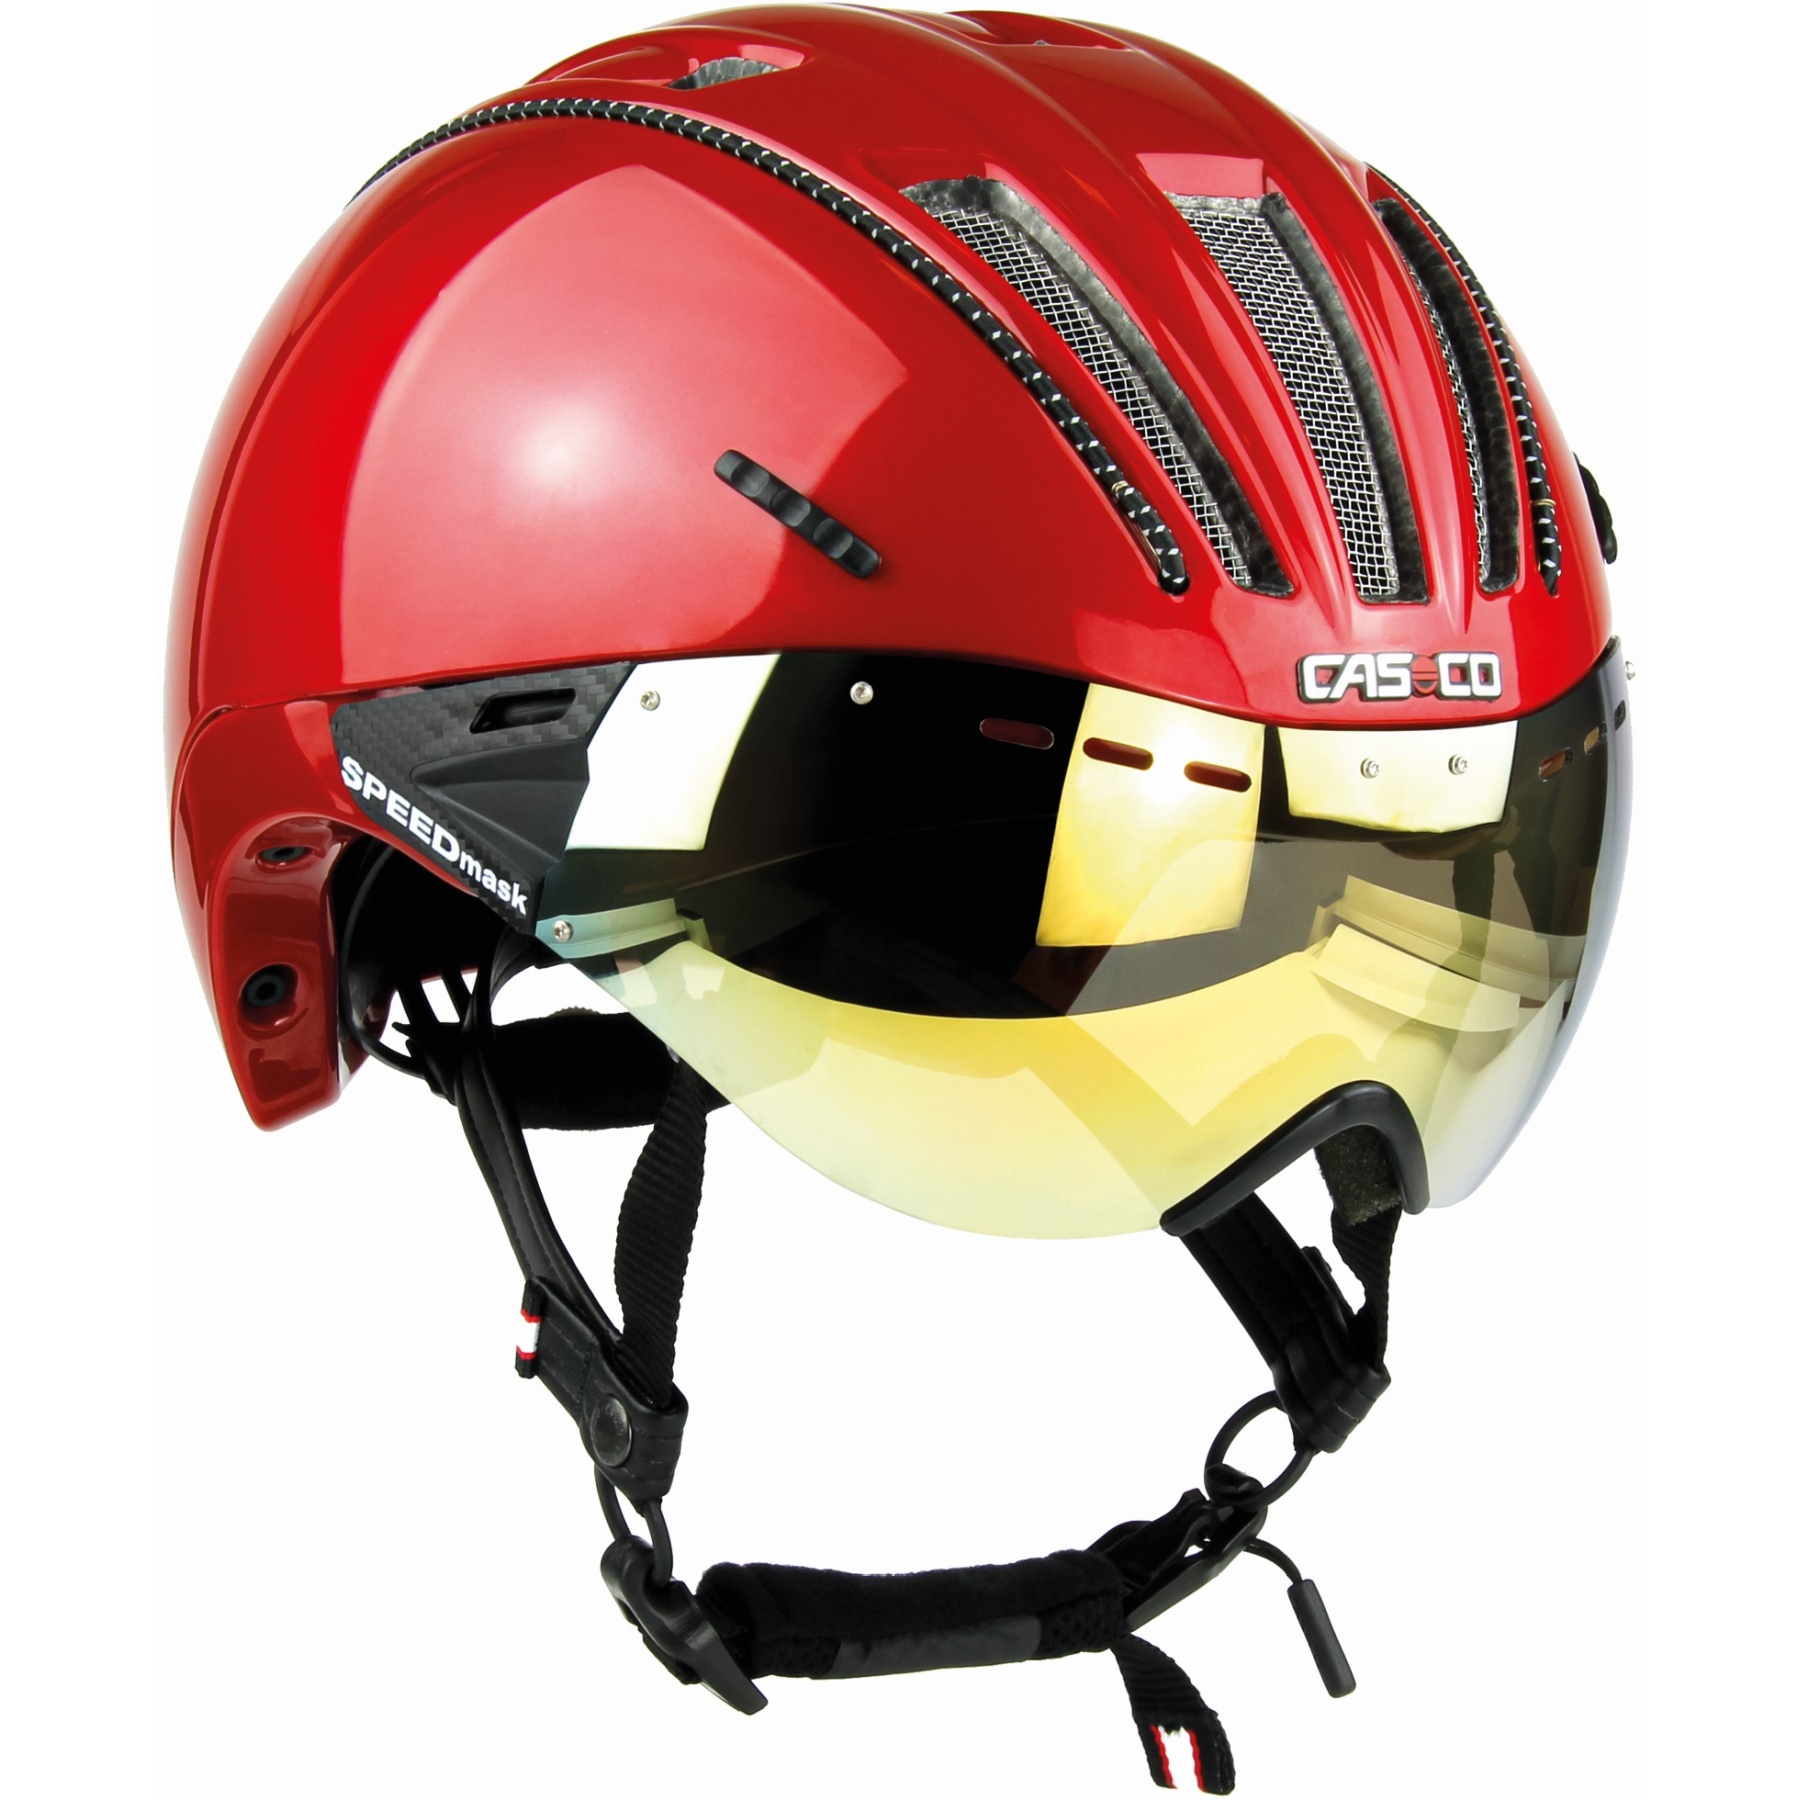 Bild von Casco Roadster Plus Helm - rot glanz